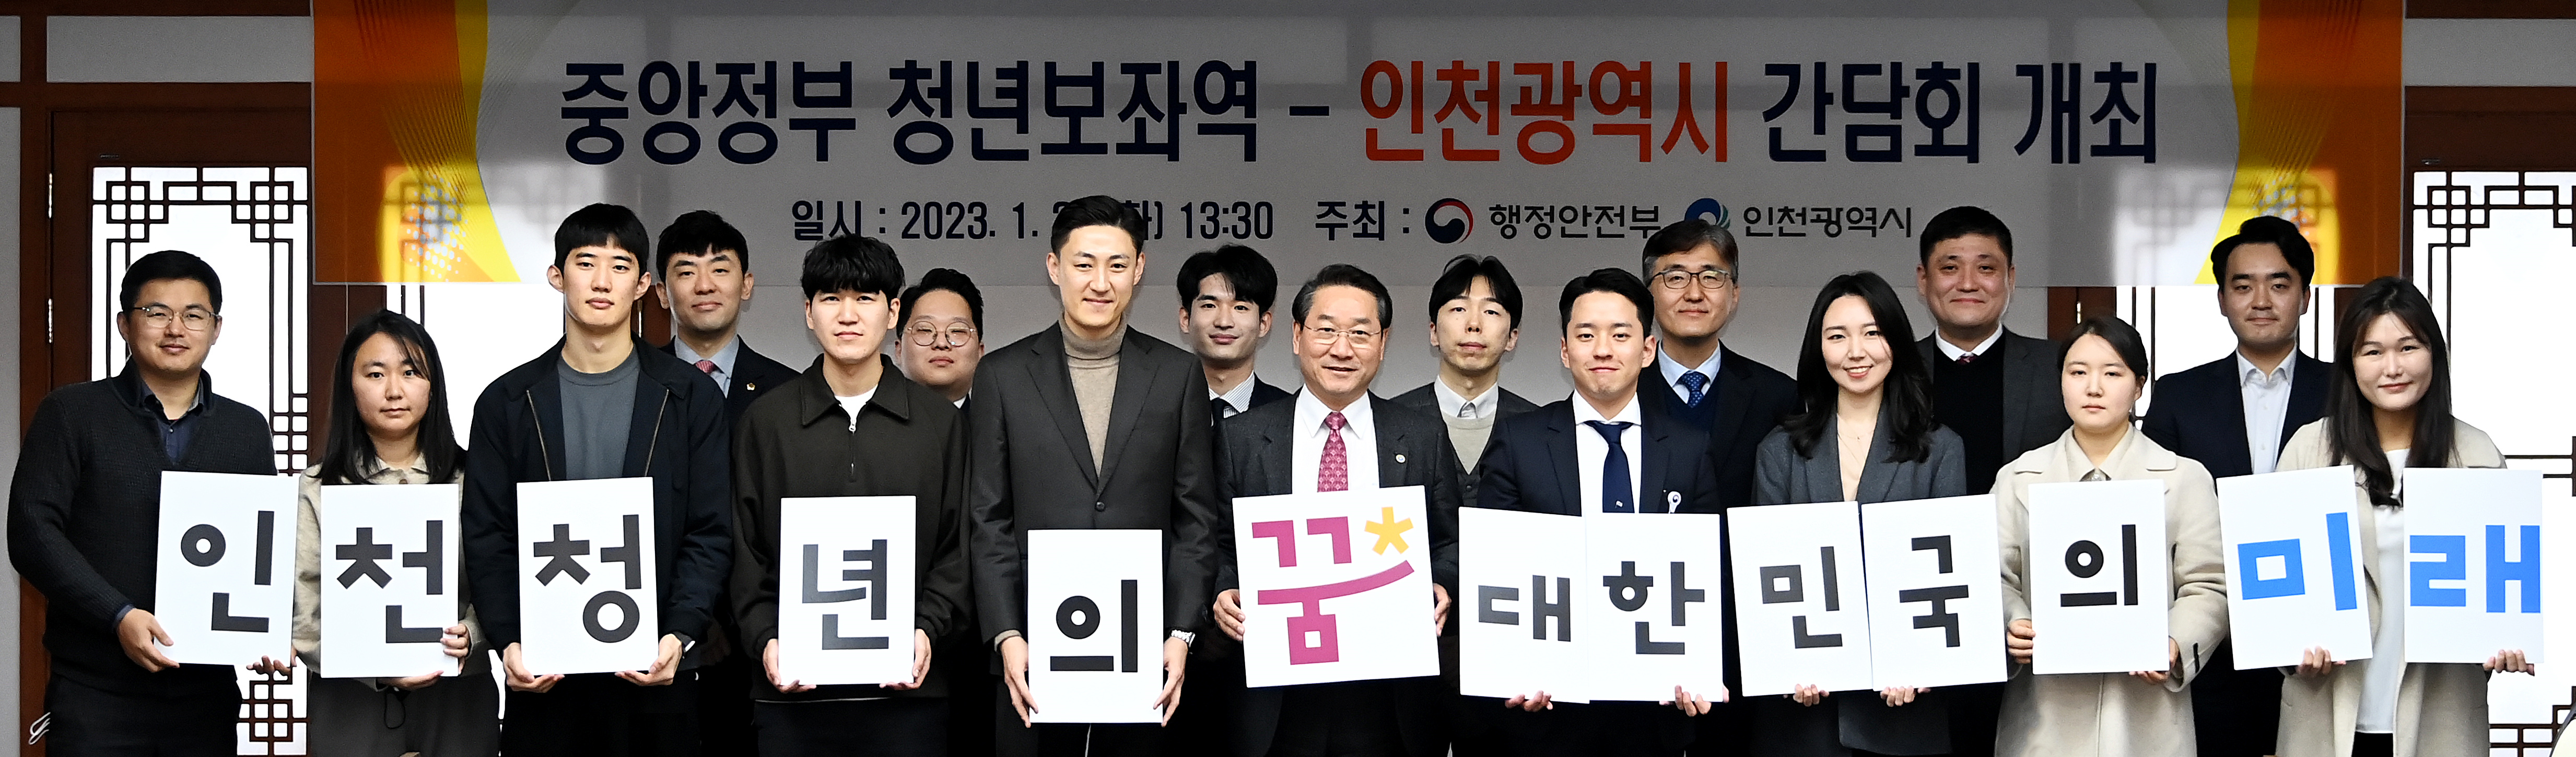 중앙정부 청년보좌역-인천광역시 간담회 개최